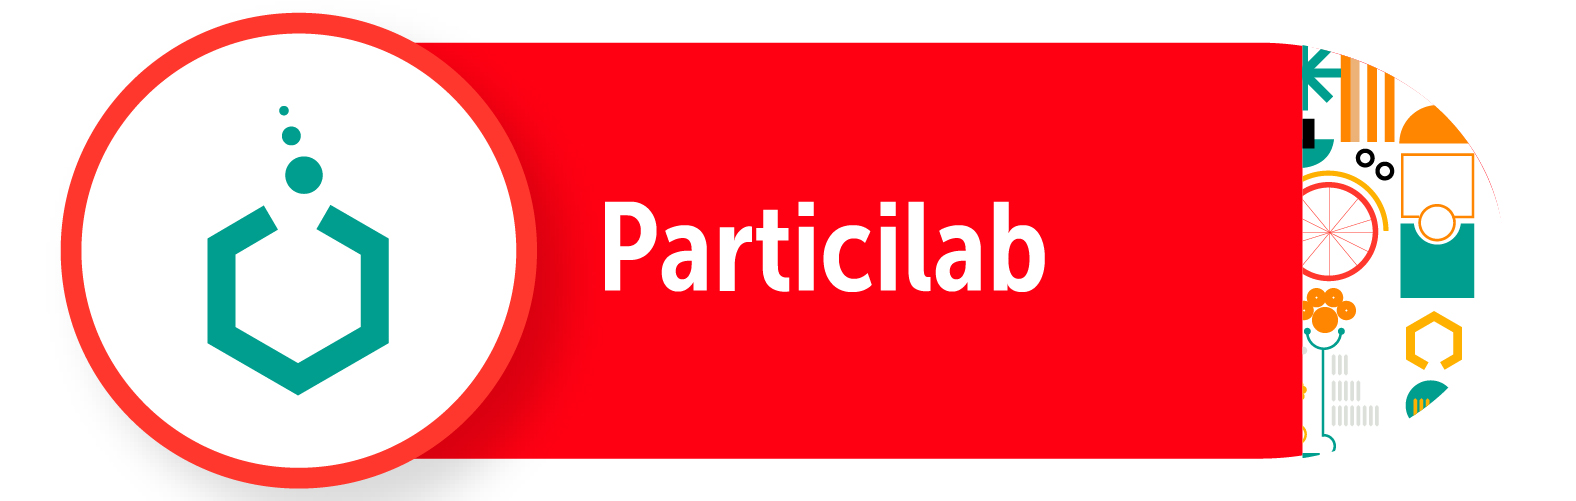 ParticiLab